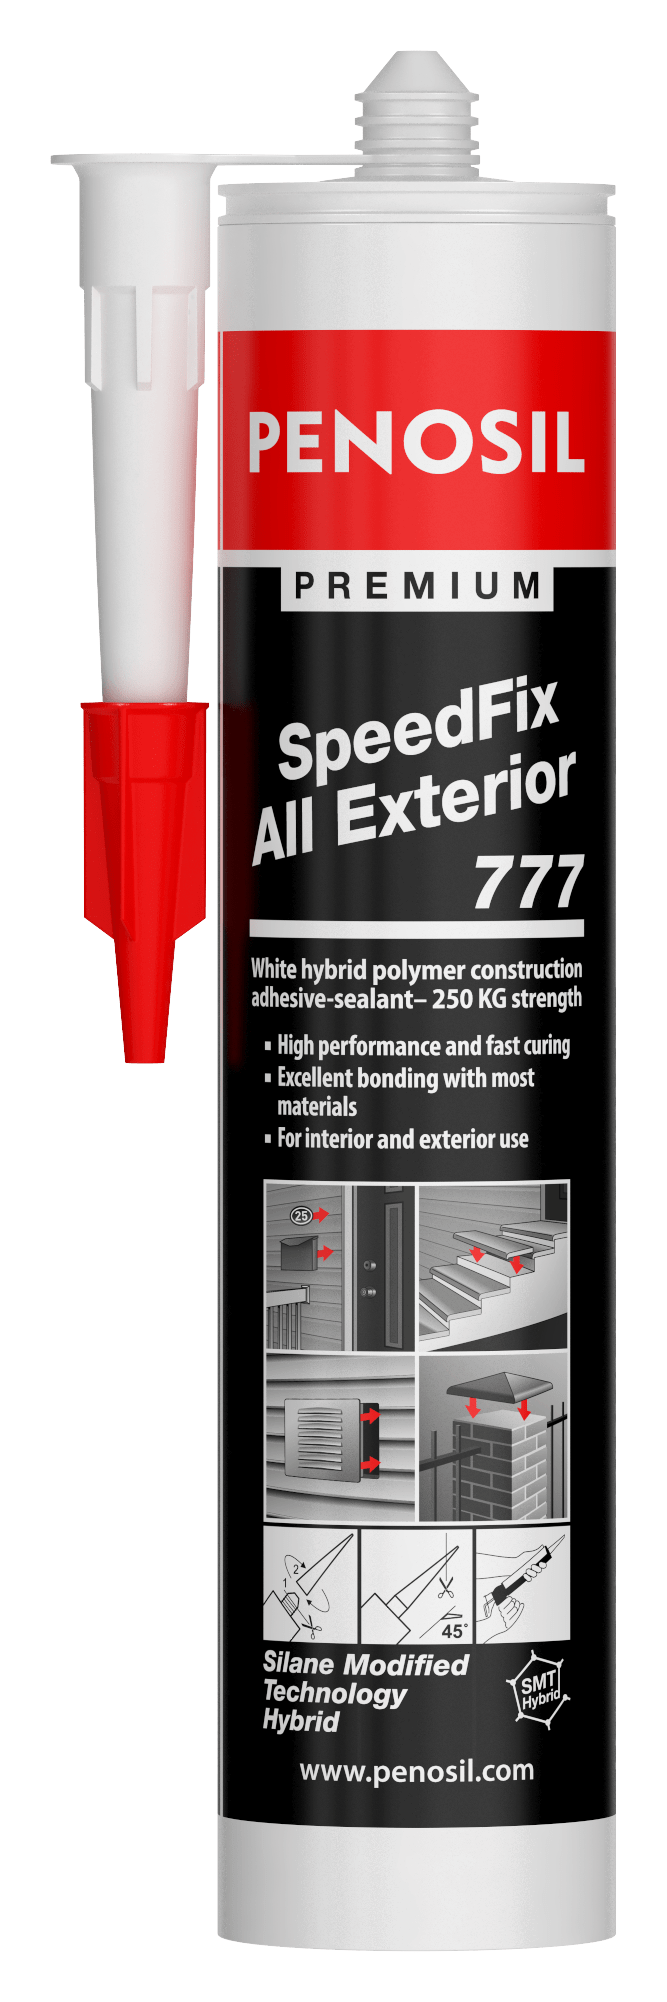 PENOSIL SpeedFix All Exterior 777 general purpose adhesive